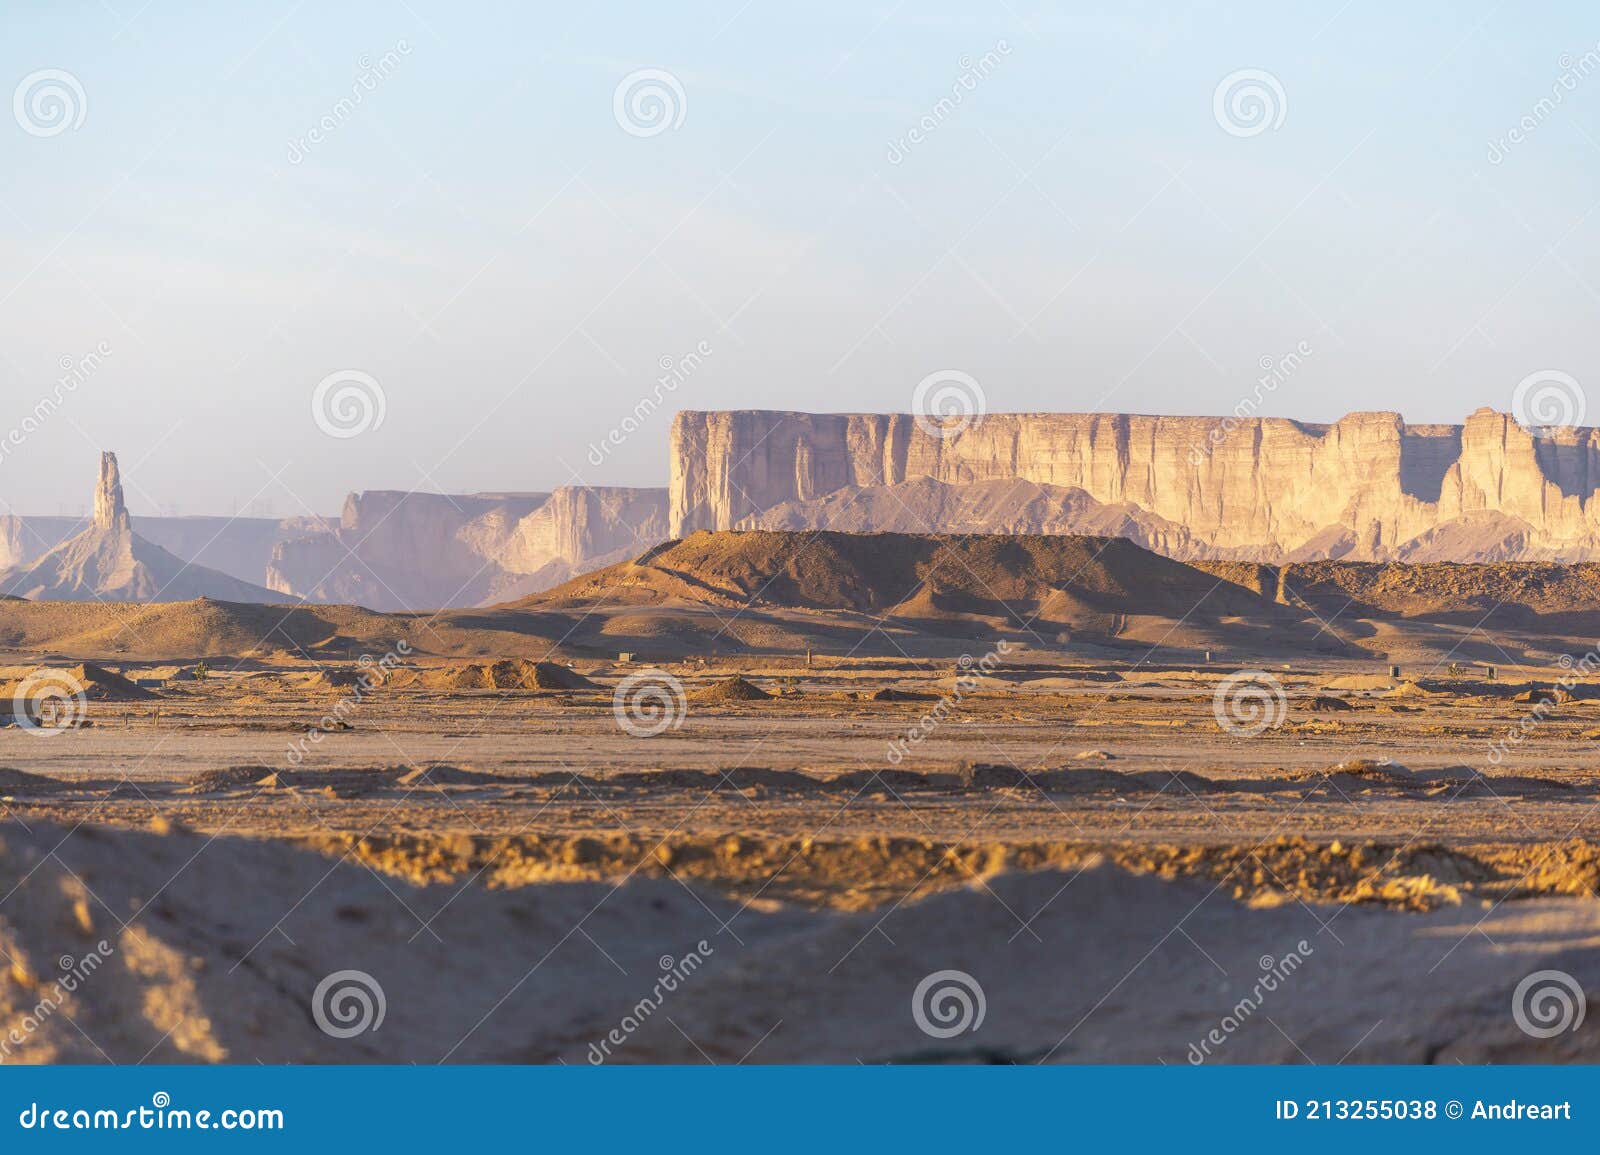 najd landscape and tuwaiq escarpment